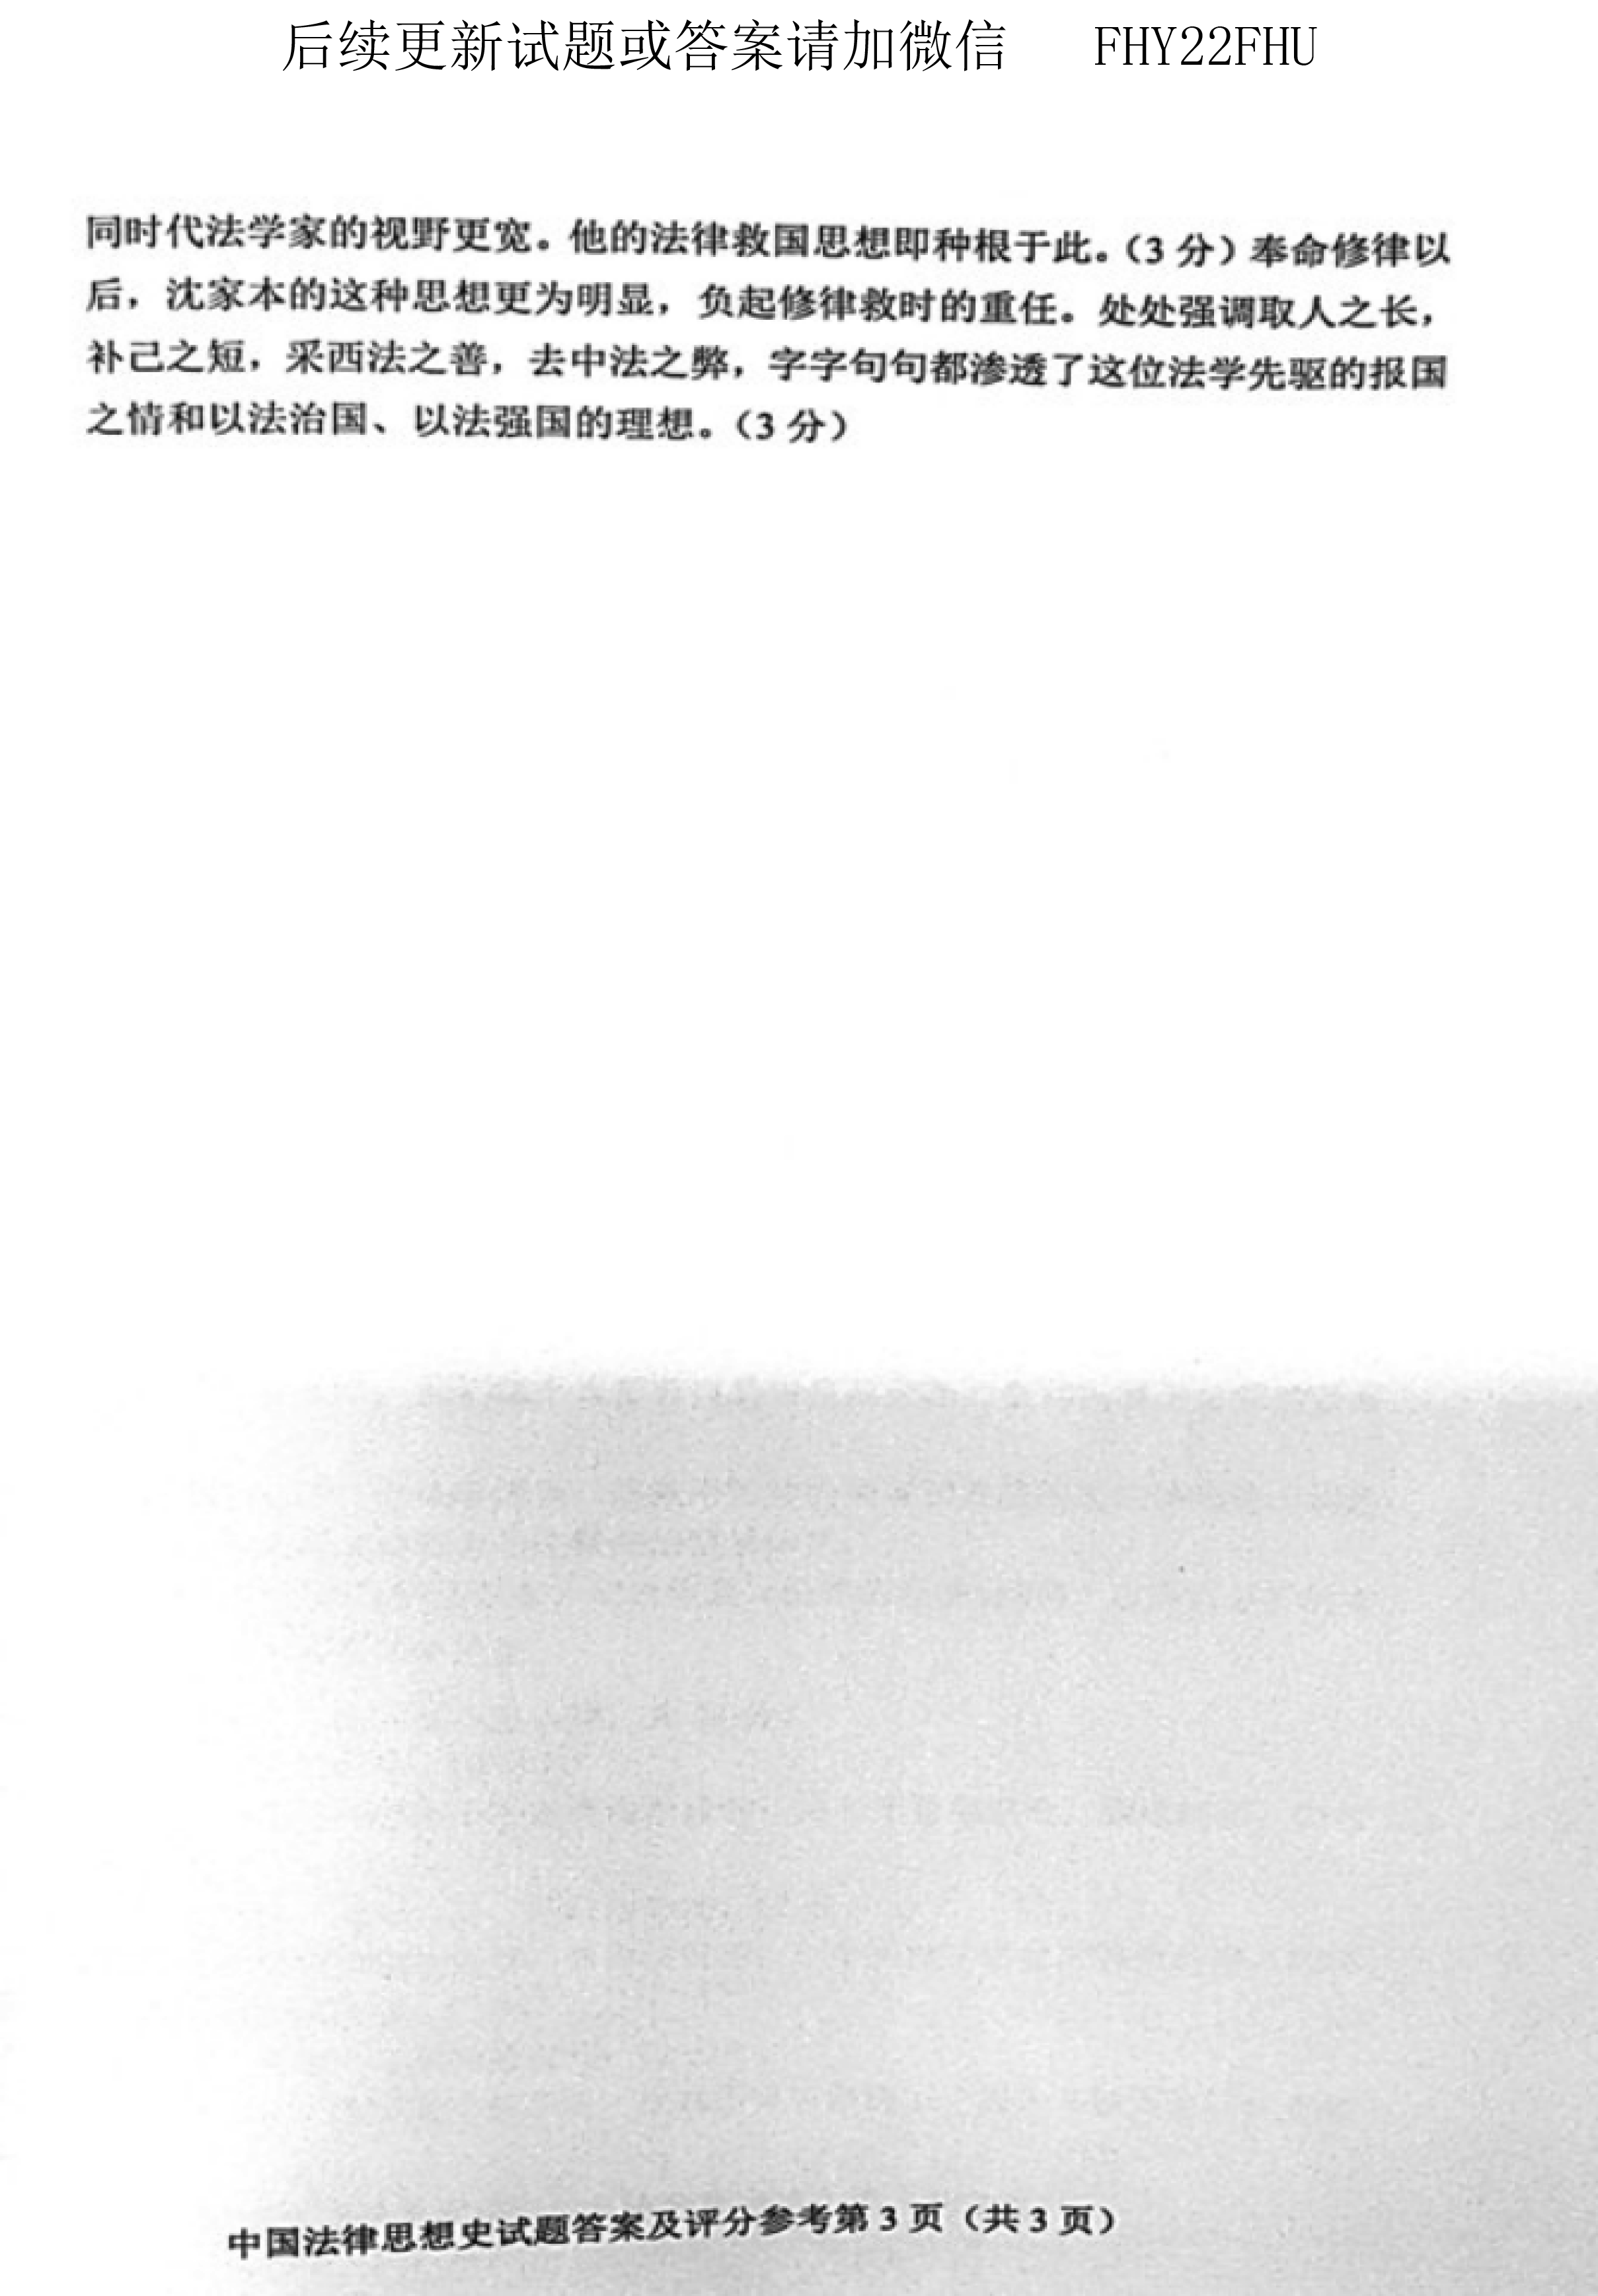 贵州省2019年04月自考00264中国法律思想史真题及答案